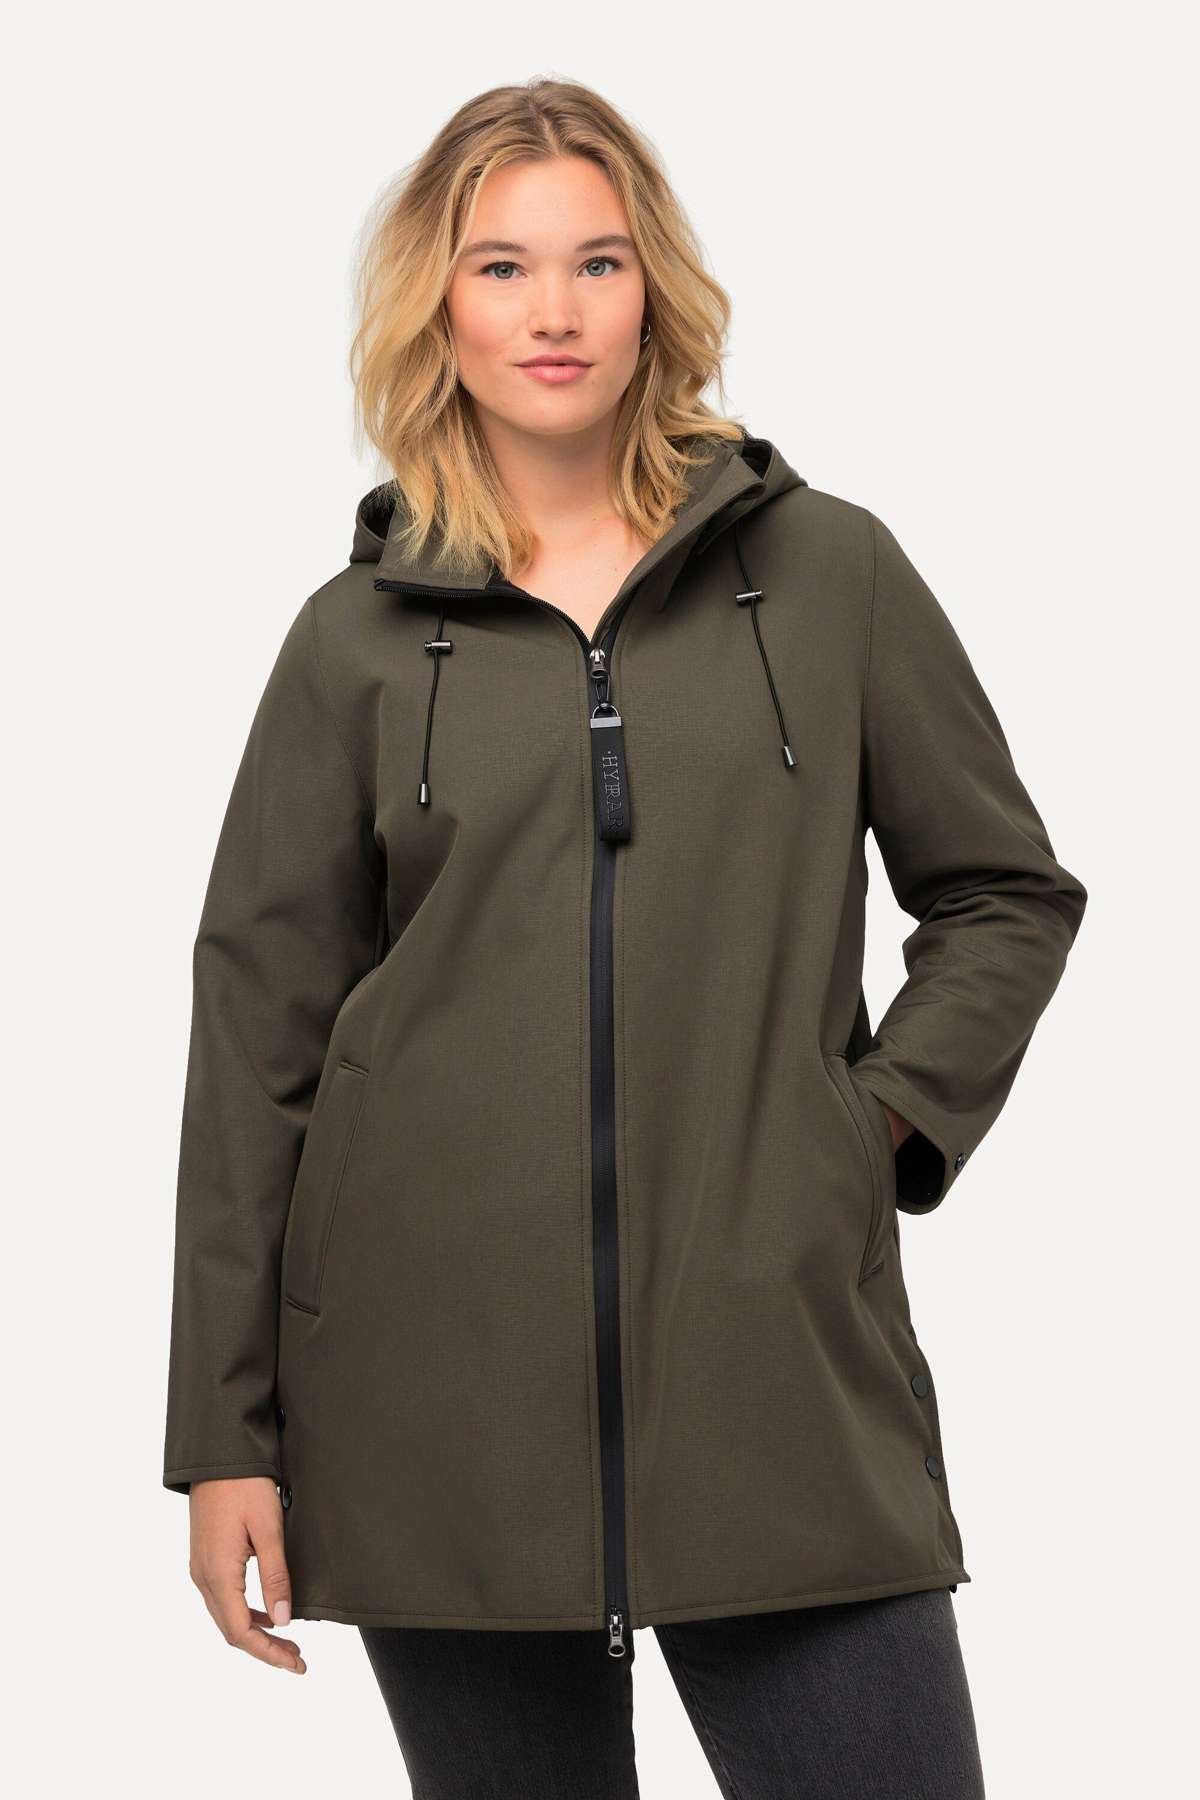 Куртка парка HYPRAR Softshell, флисовая подкладка, водоотталкивающая.